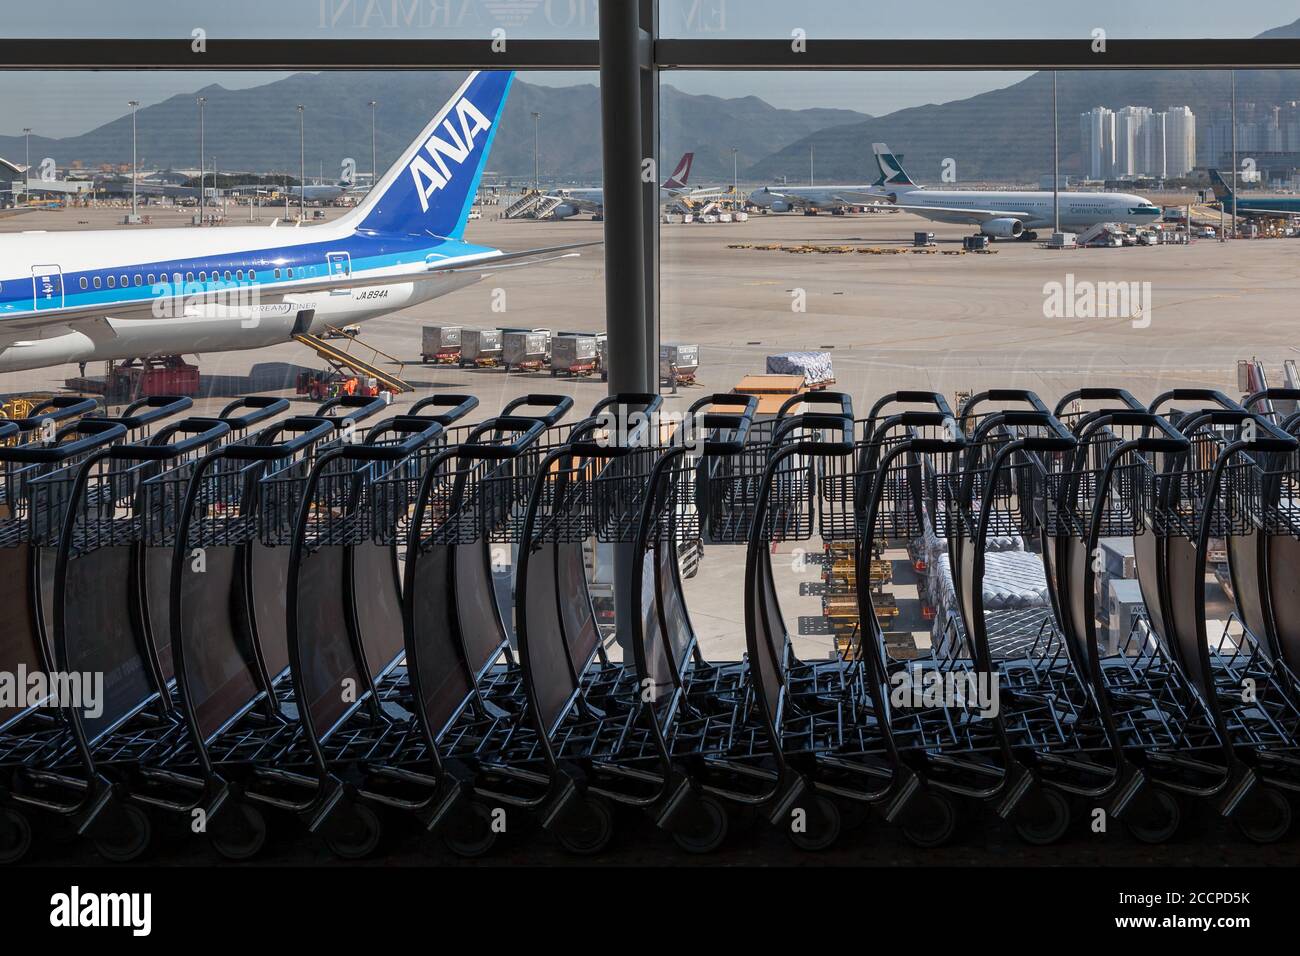 Un Boeing 787-9 Dreamliner avec All Nippon Airways vu derrière une collection de chariots à bagages à l'aéroport de Chek Lap Kok, Hong Kong SAR, Chine. Banque D'Images